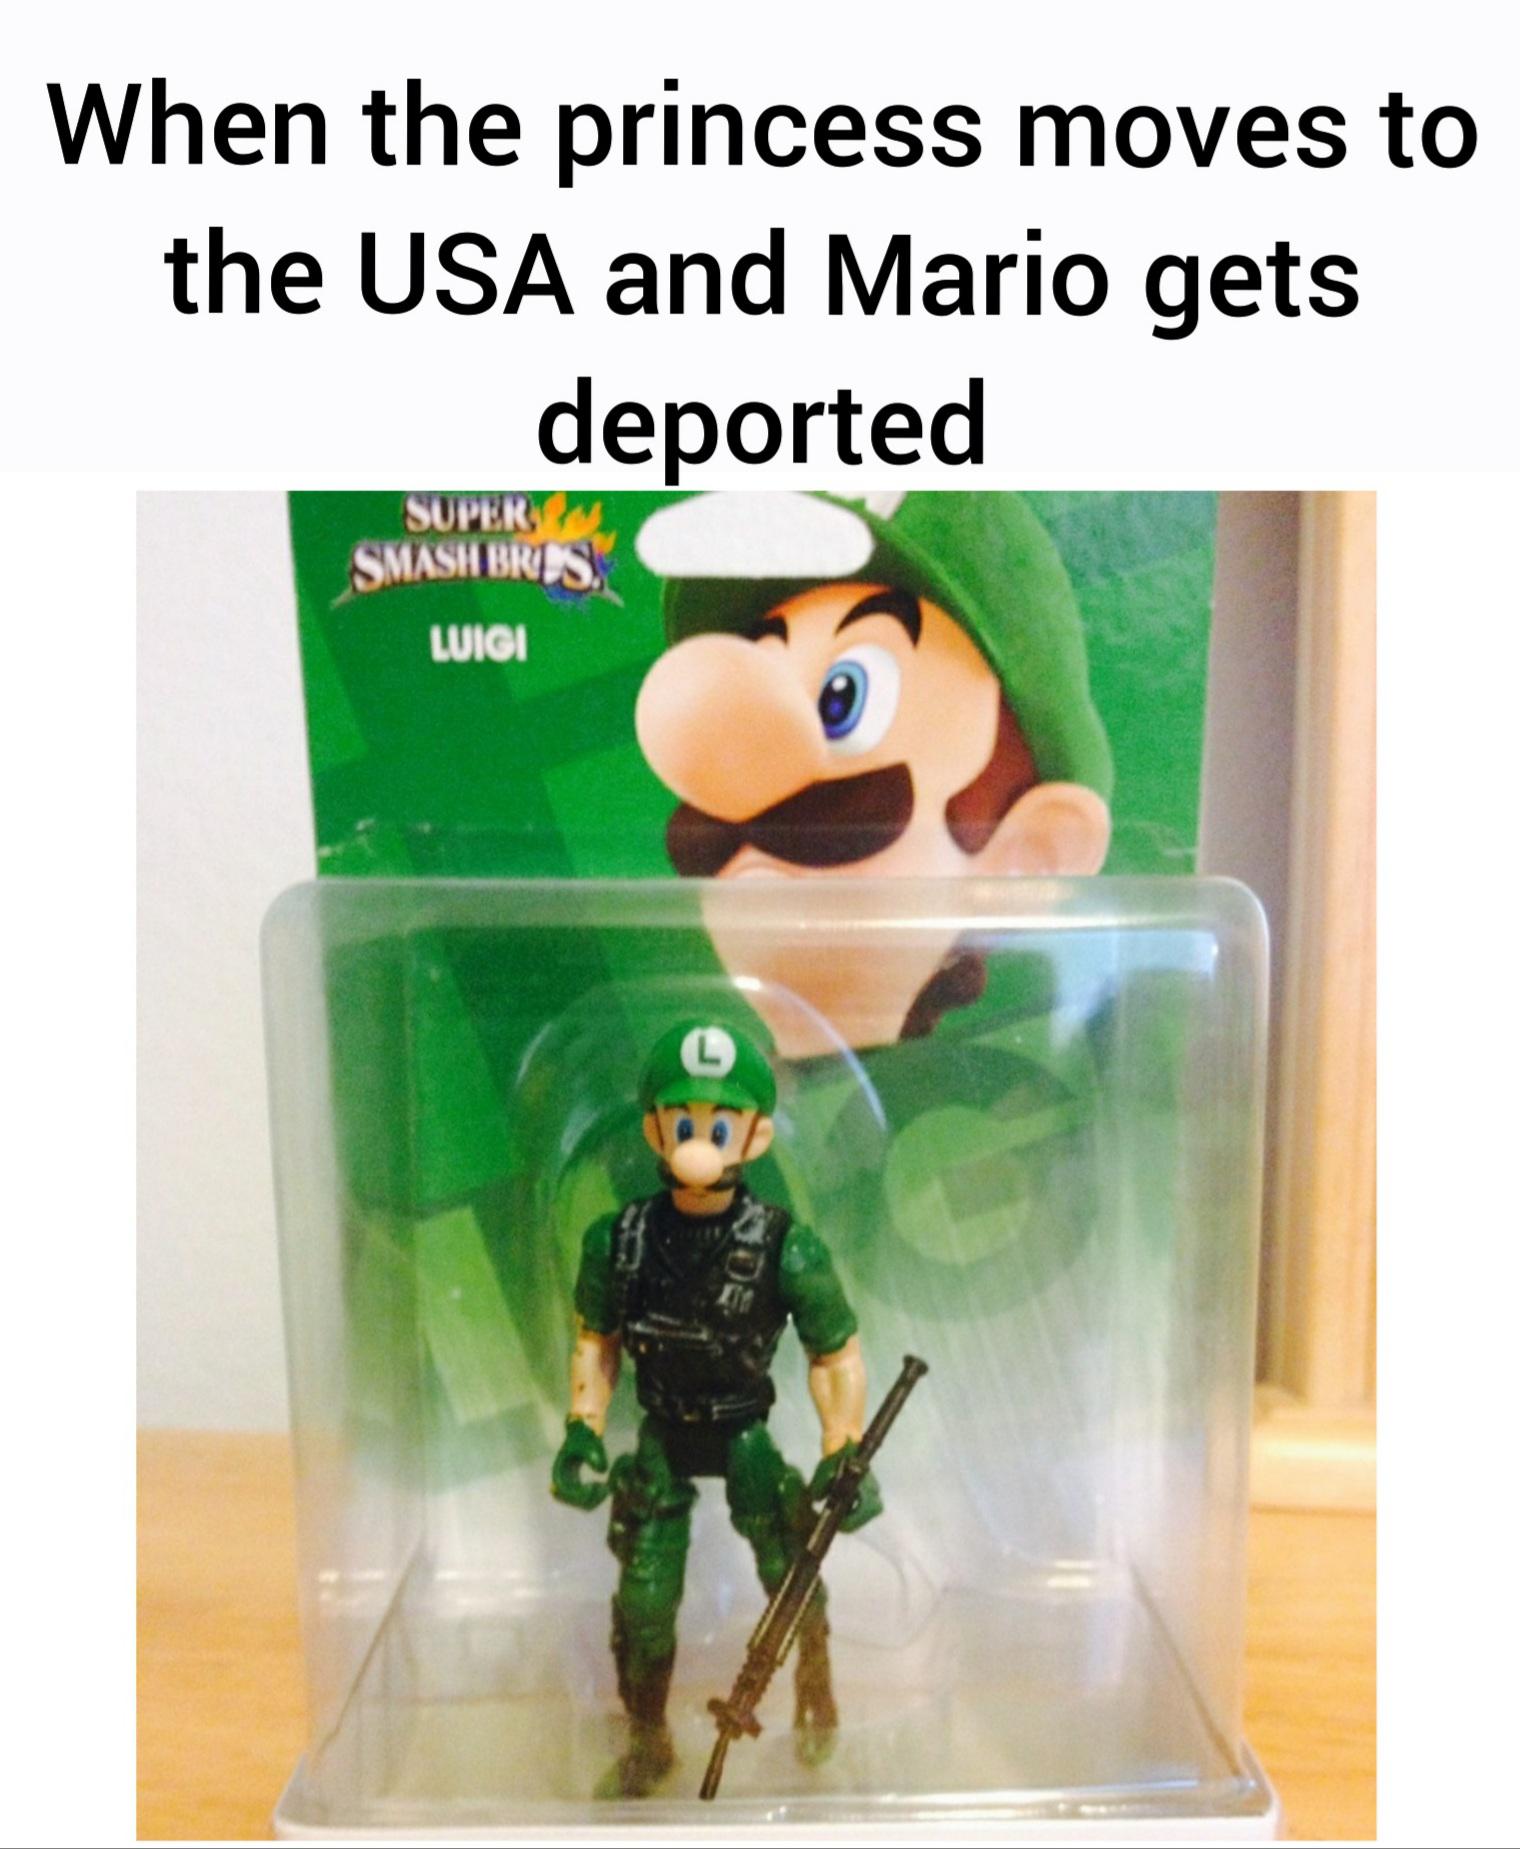 super smash bros luigi amiibo - When the princess moves to the Usa and Mario gets deported Super Smash Bros. Luigi